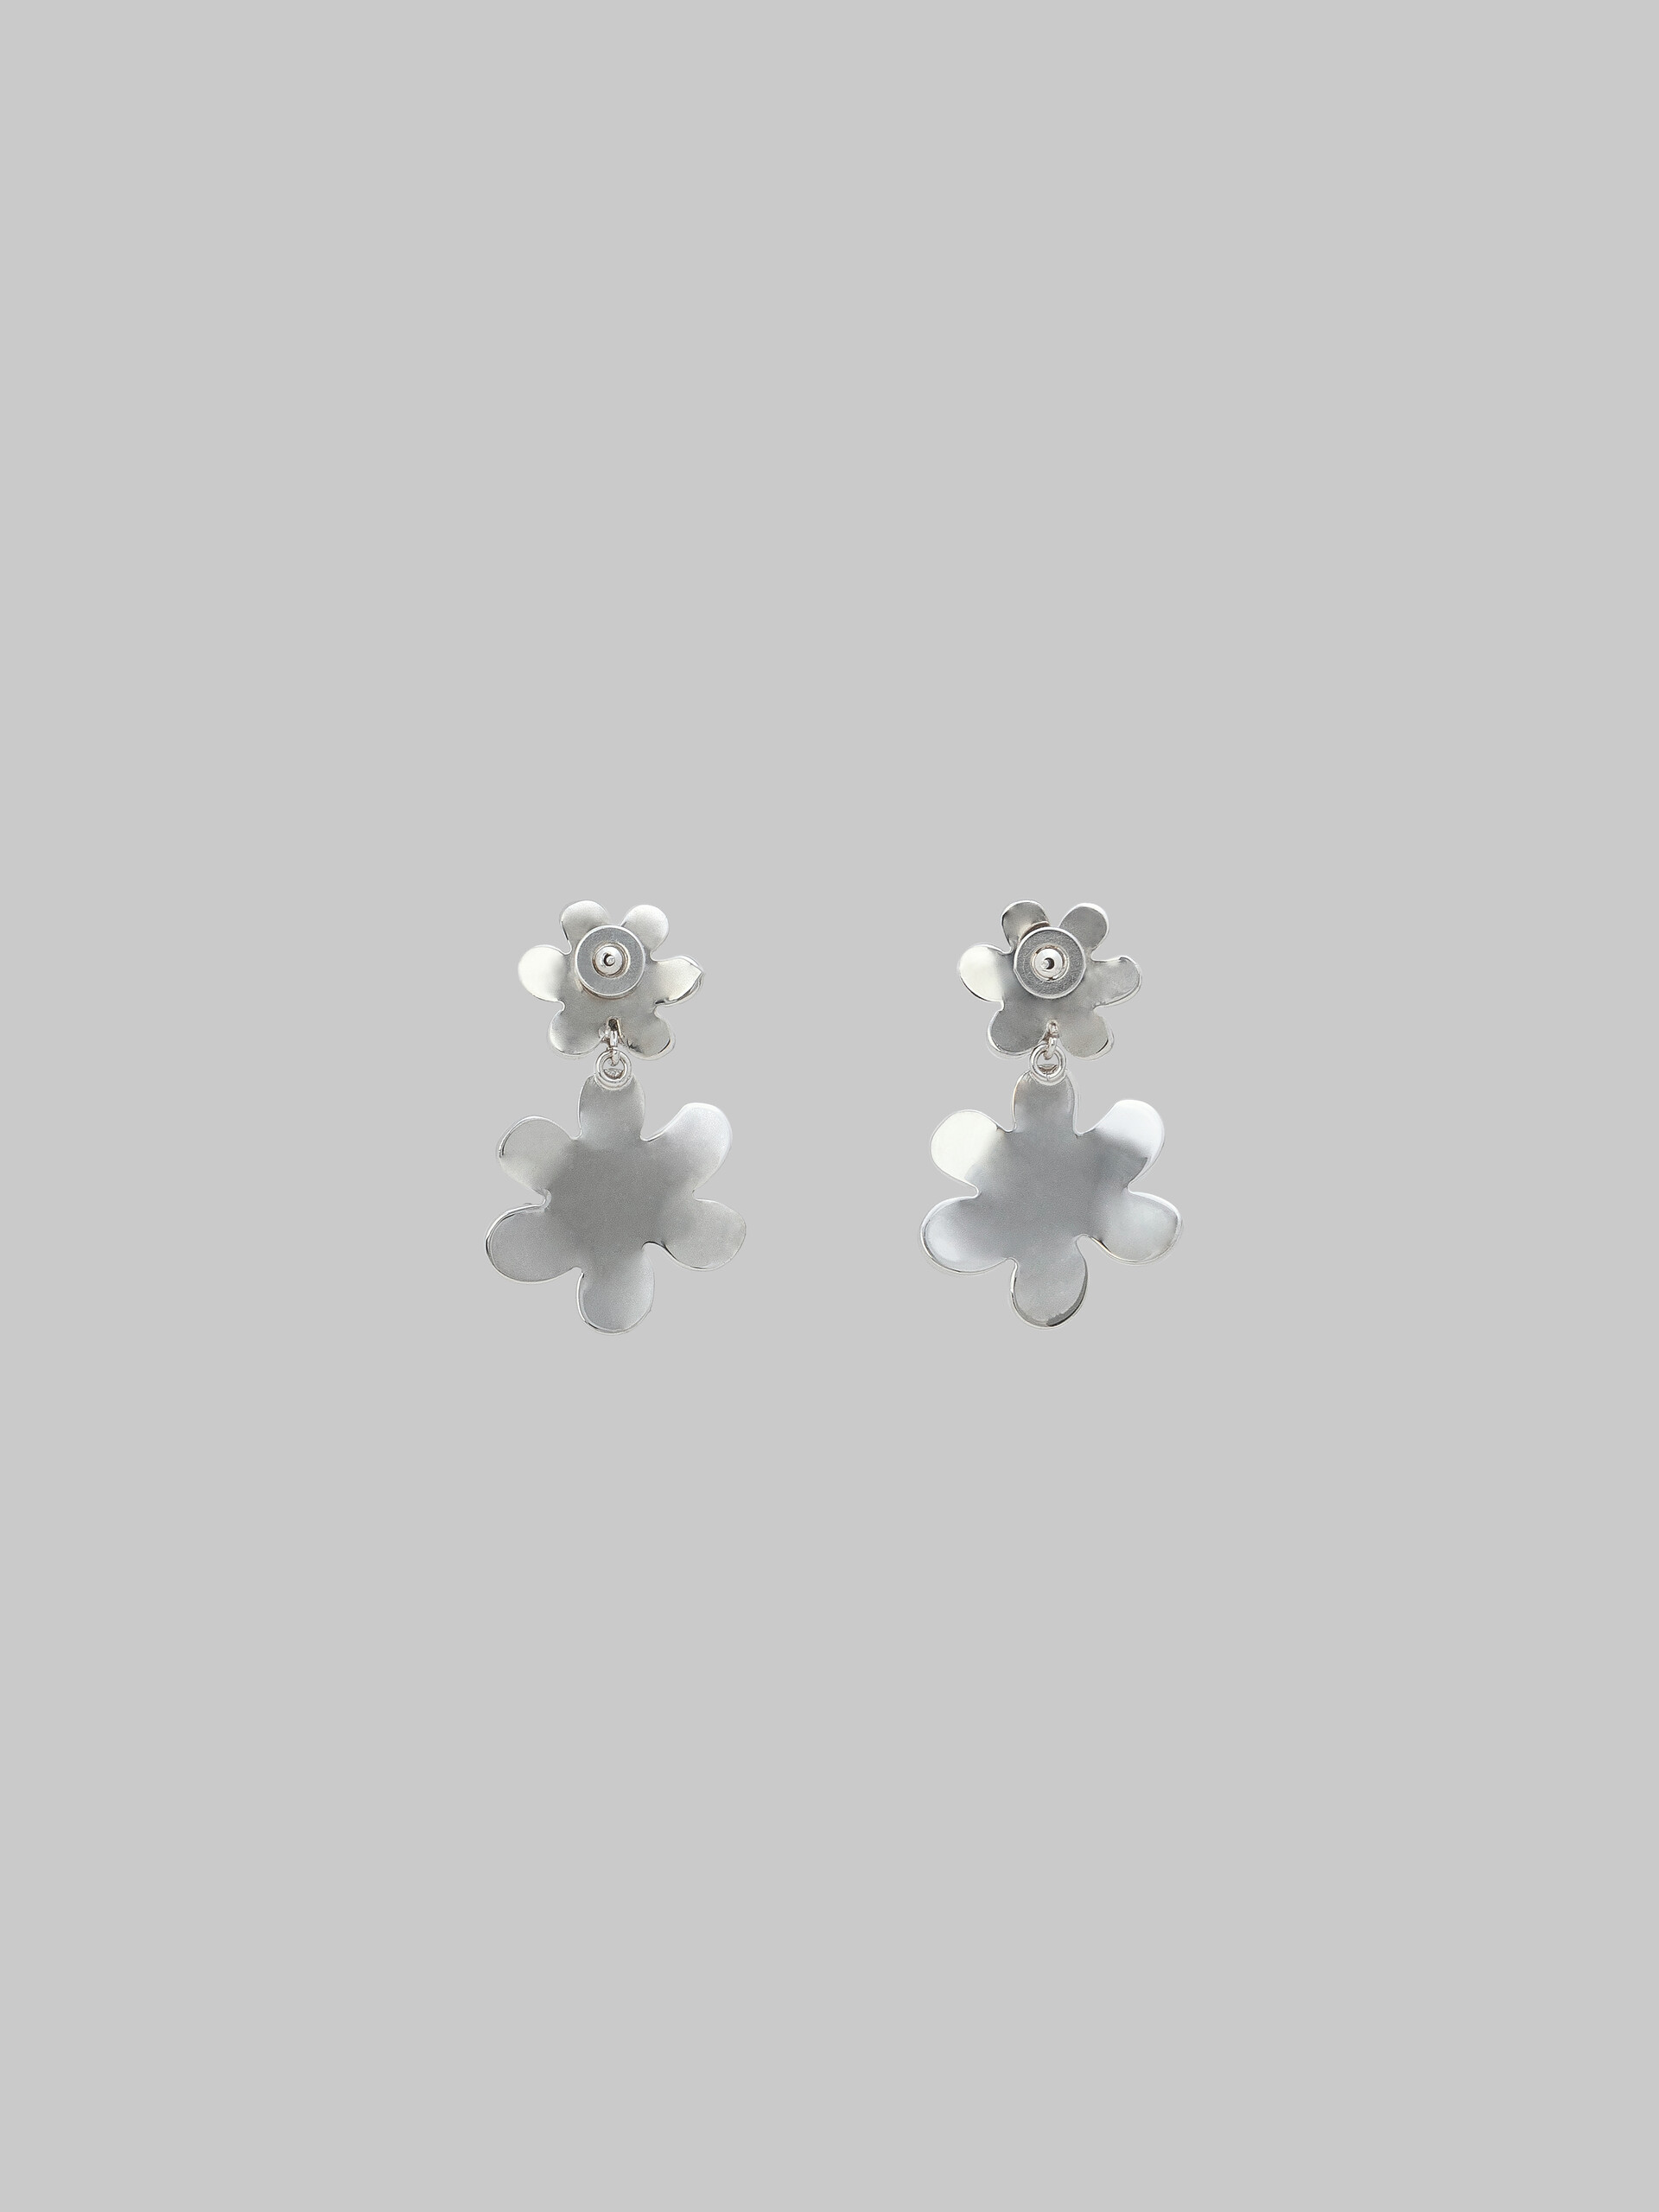 Daisy drop earrings with pavé rhinestones - Earrings - Image 3